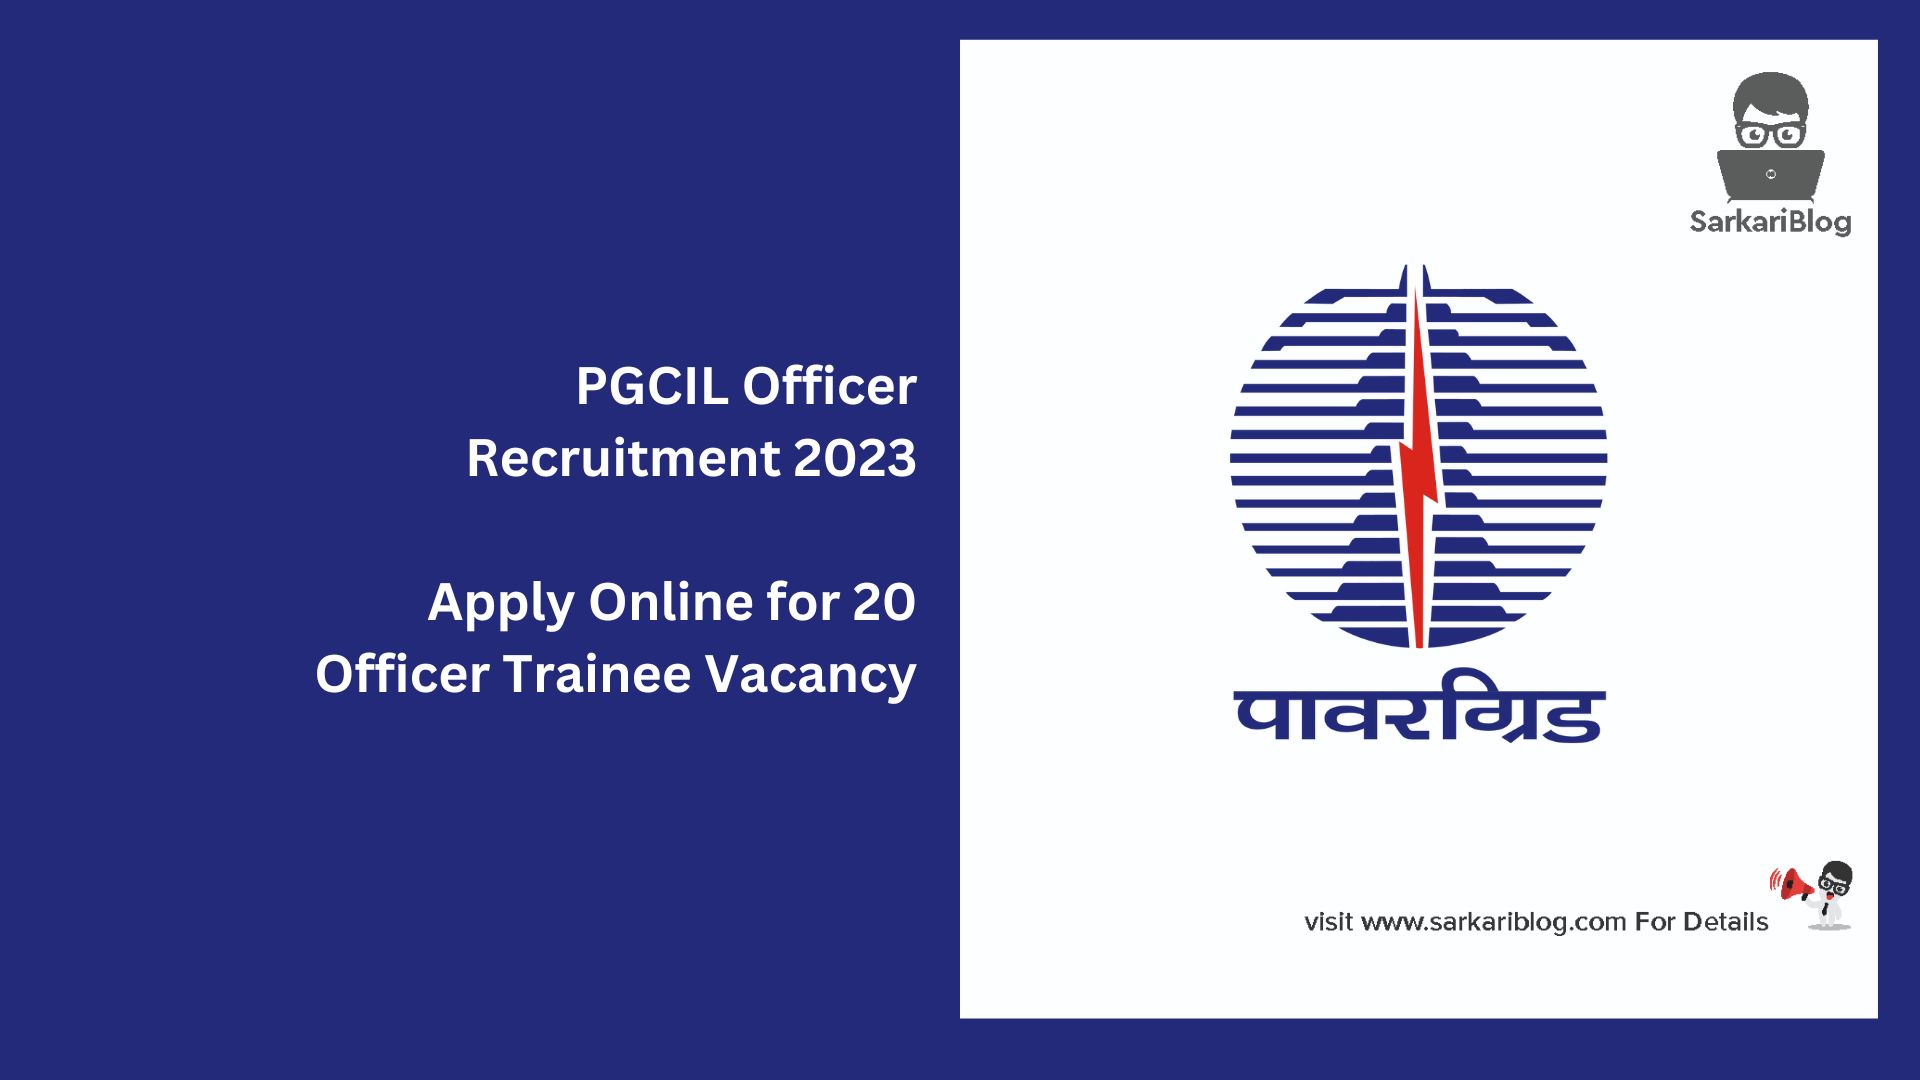 PGCIL Officer Recruitment 2023